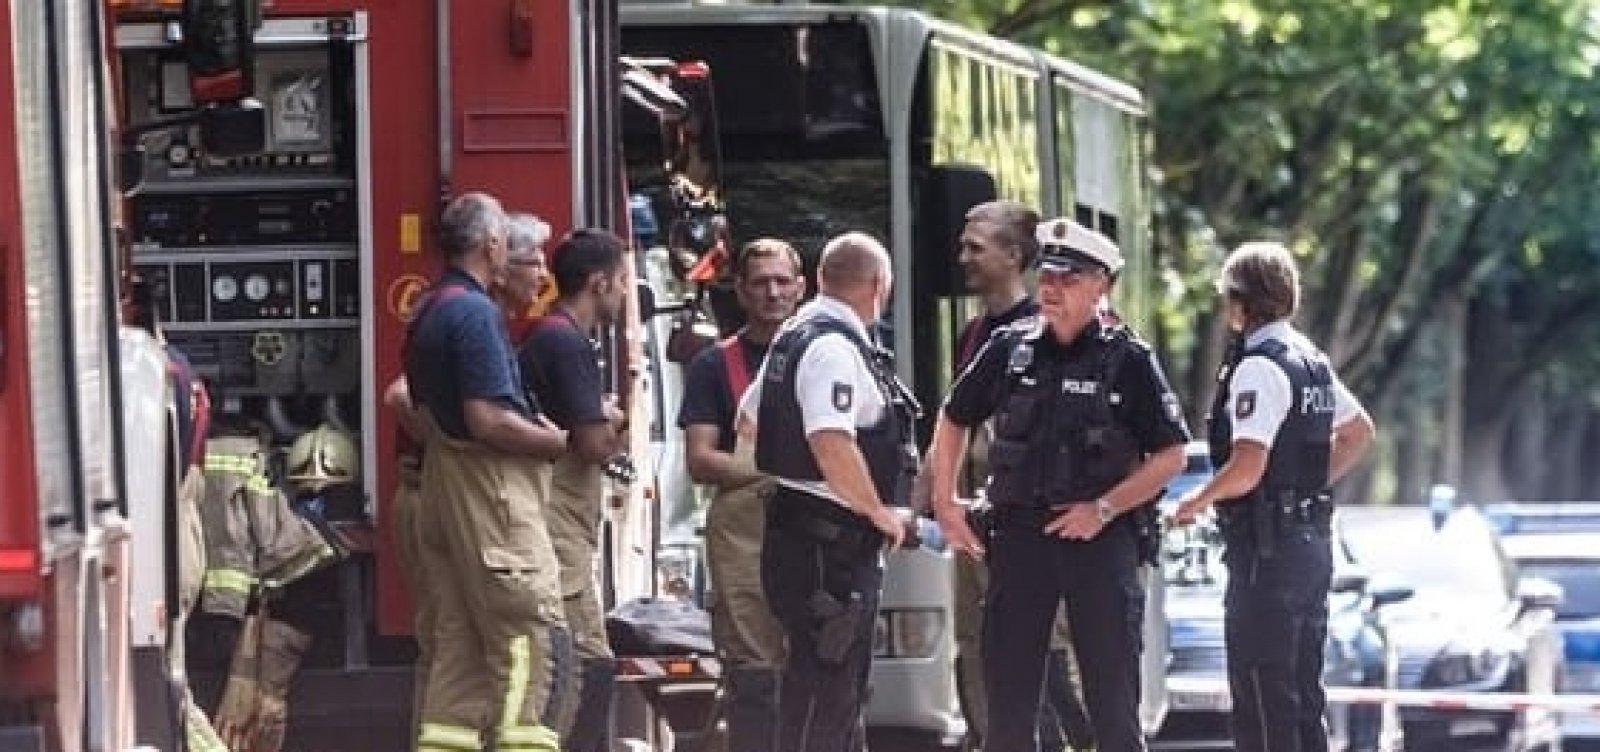 Ataque com faca em ônibus deixa 14 feridos na Alemanha